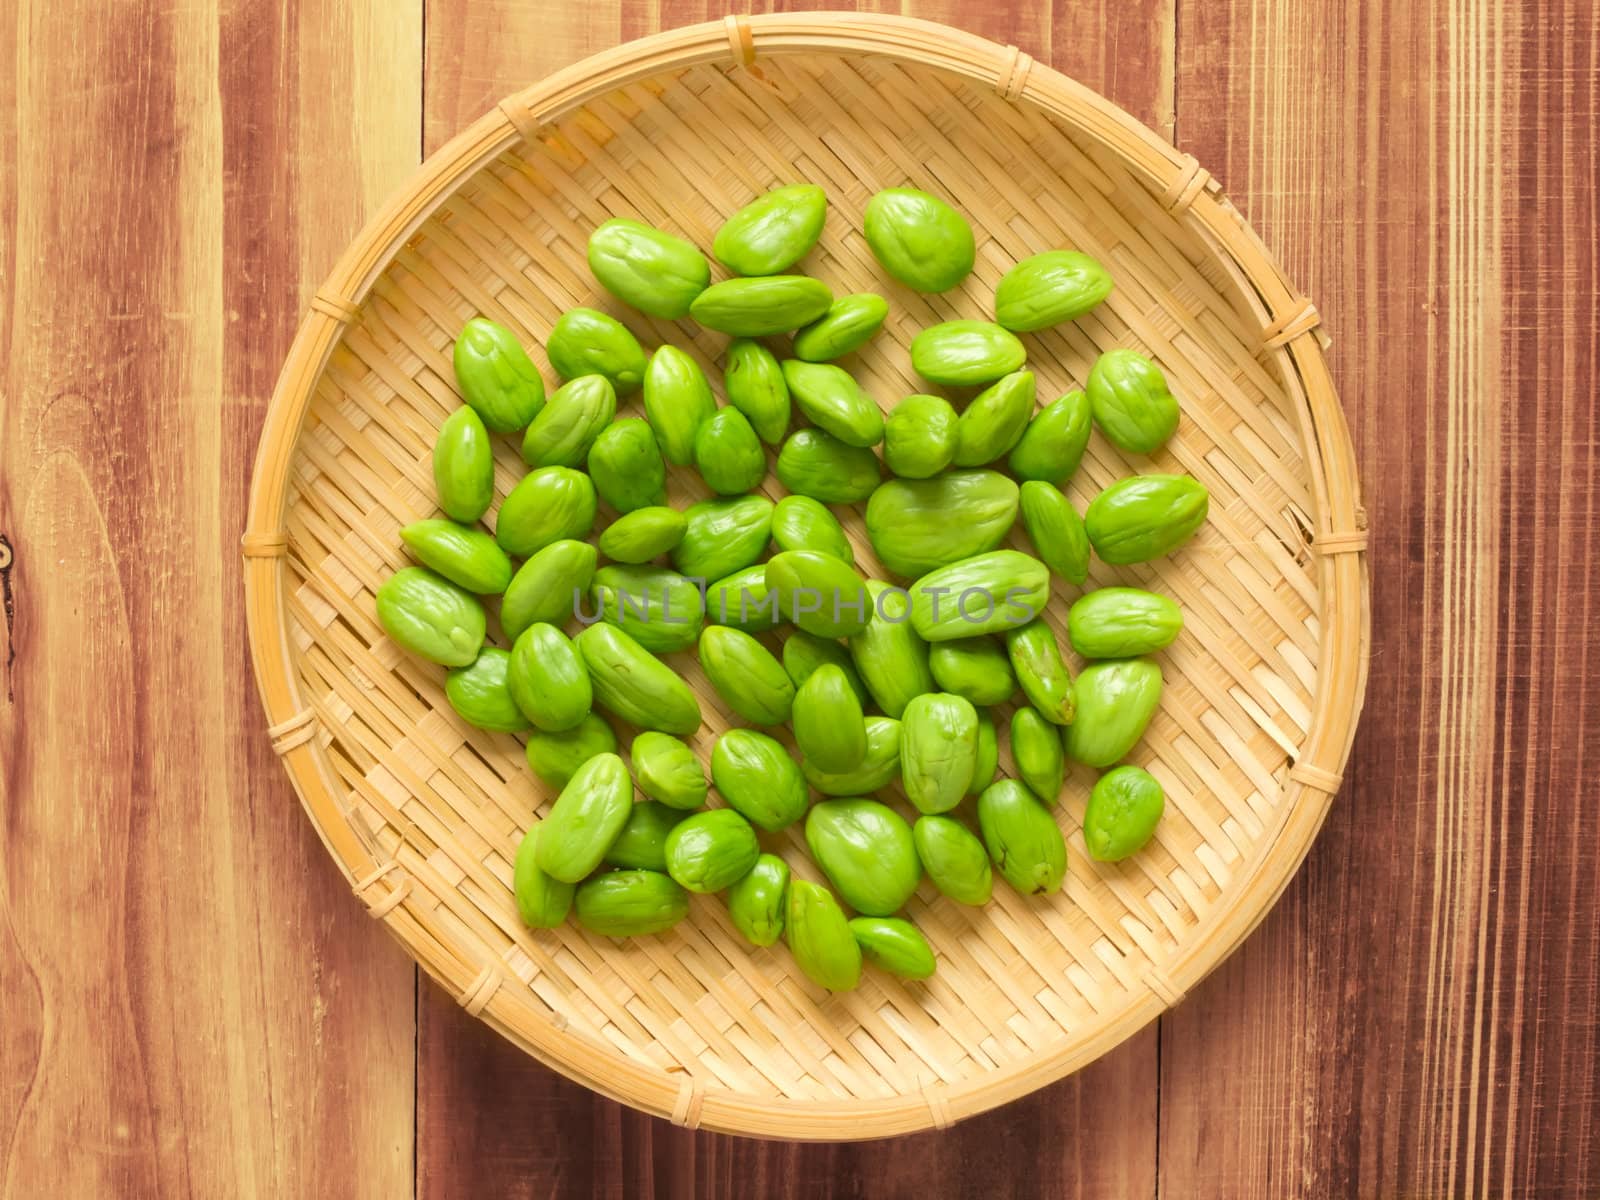 close up of a basket of petai beans